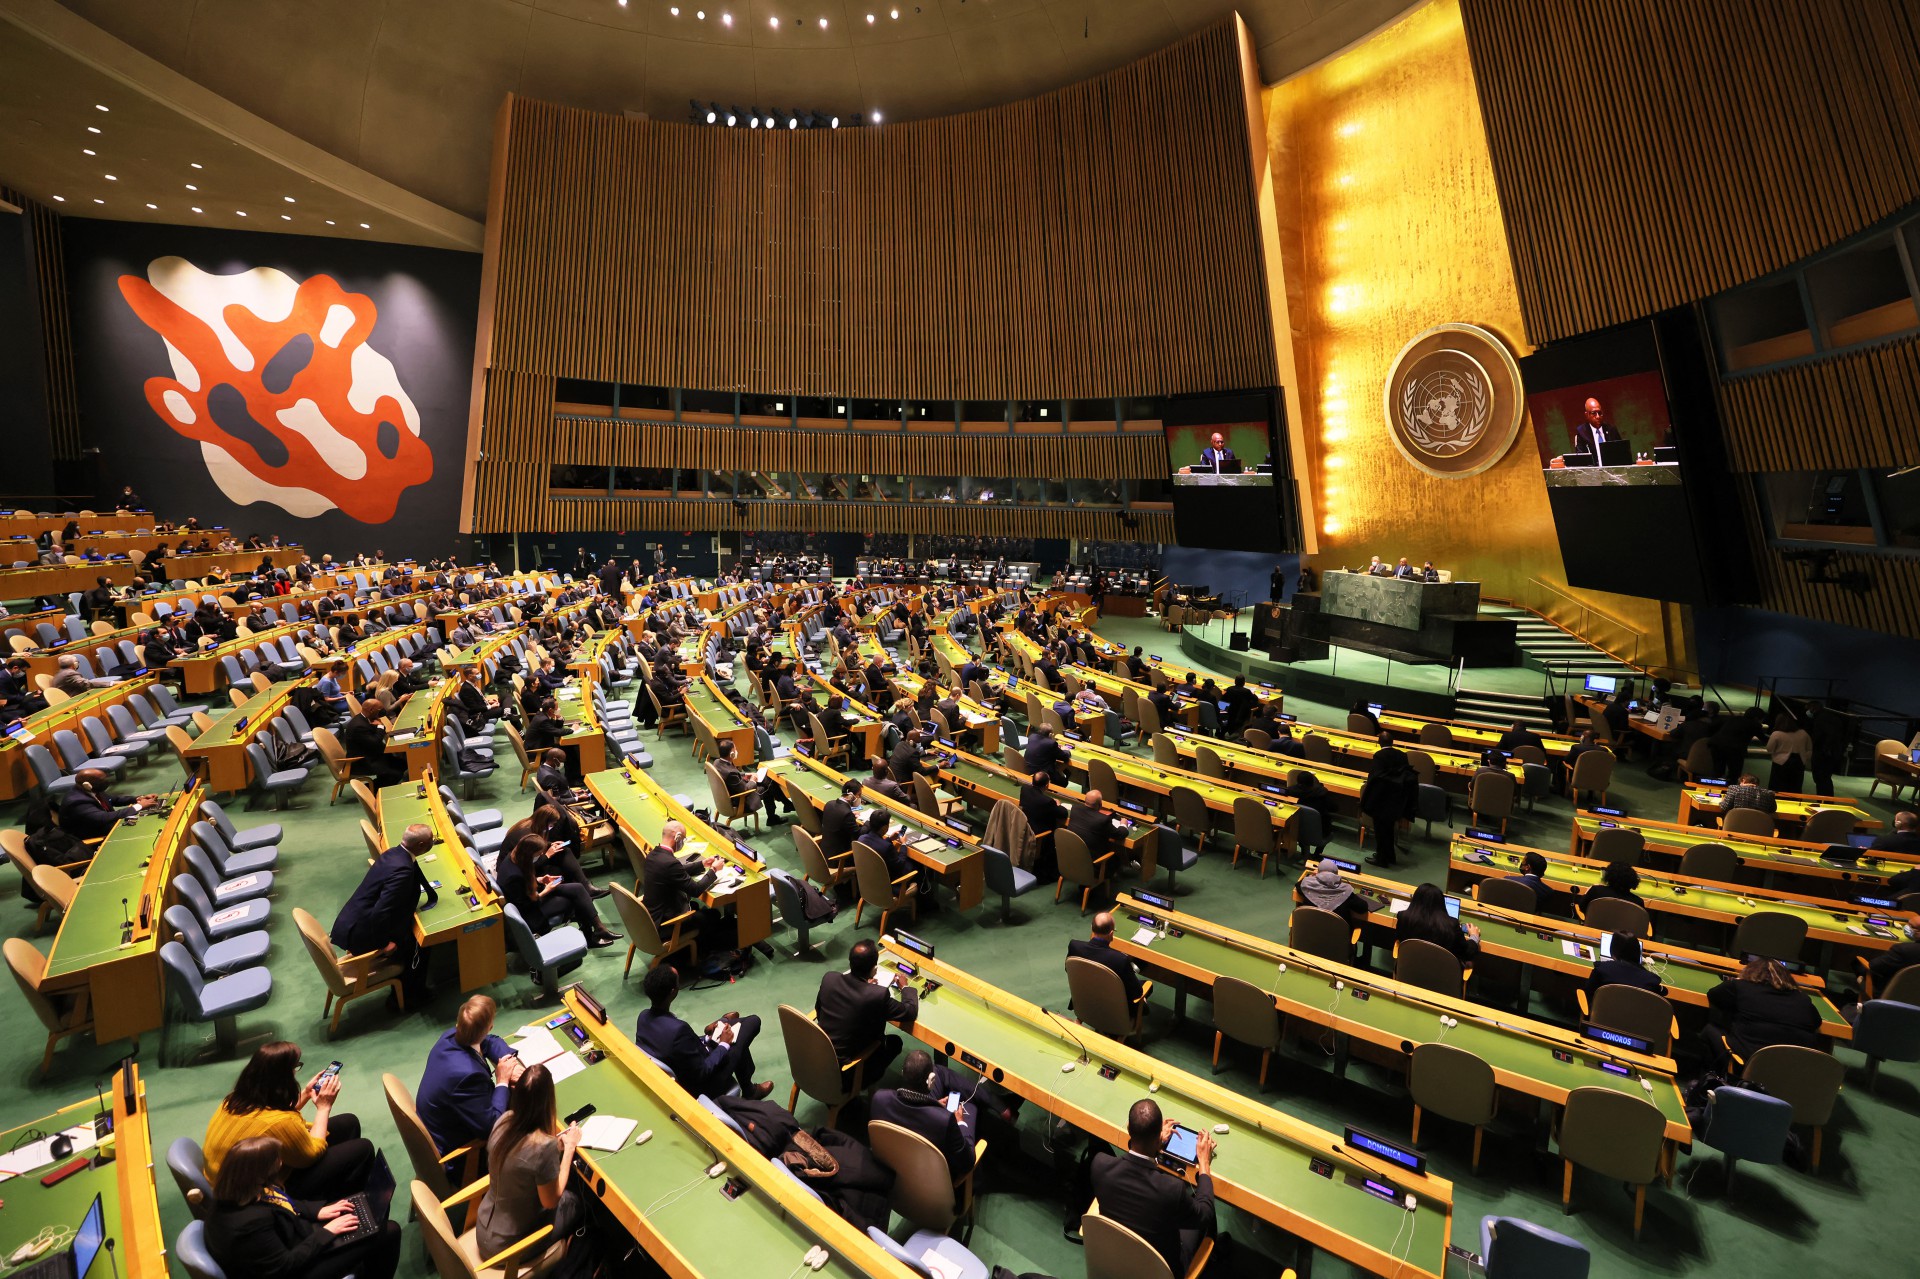 ￼Sessão extraordinária da assembleia das Nações Unidas, na segunda-feira, 28 (Foto: MICHAEL M. SANTIAGO / GETTY IMAGES NORTH AMERICA / GETTY IMAGES VIA AFP
)